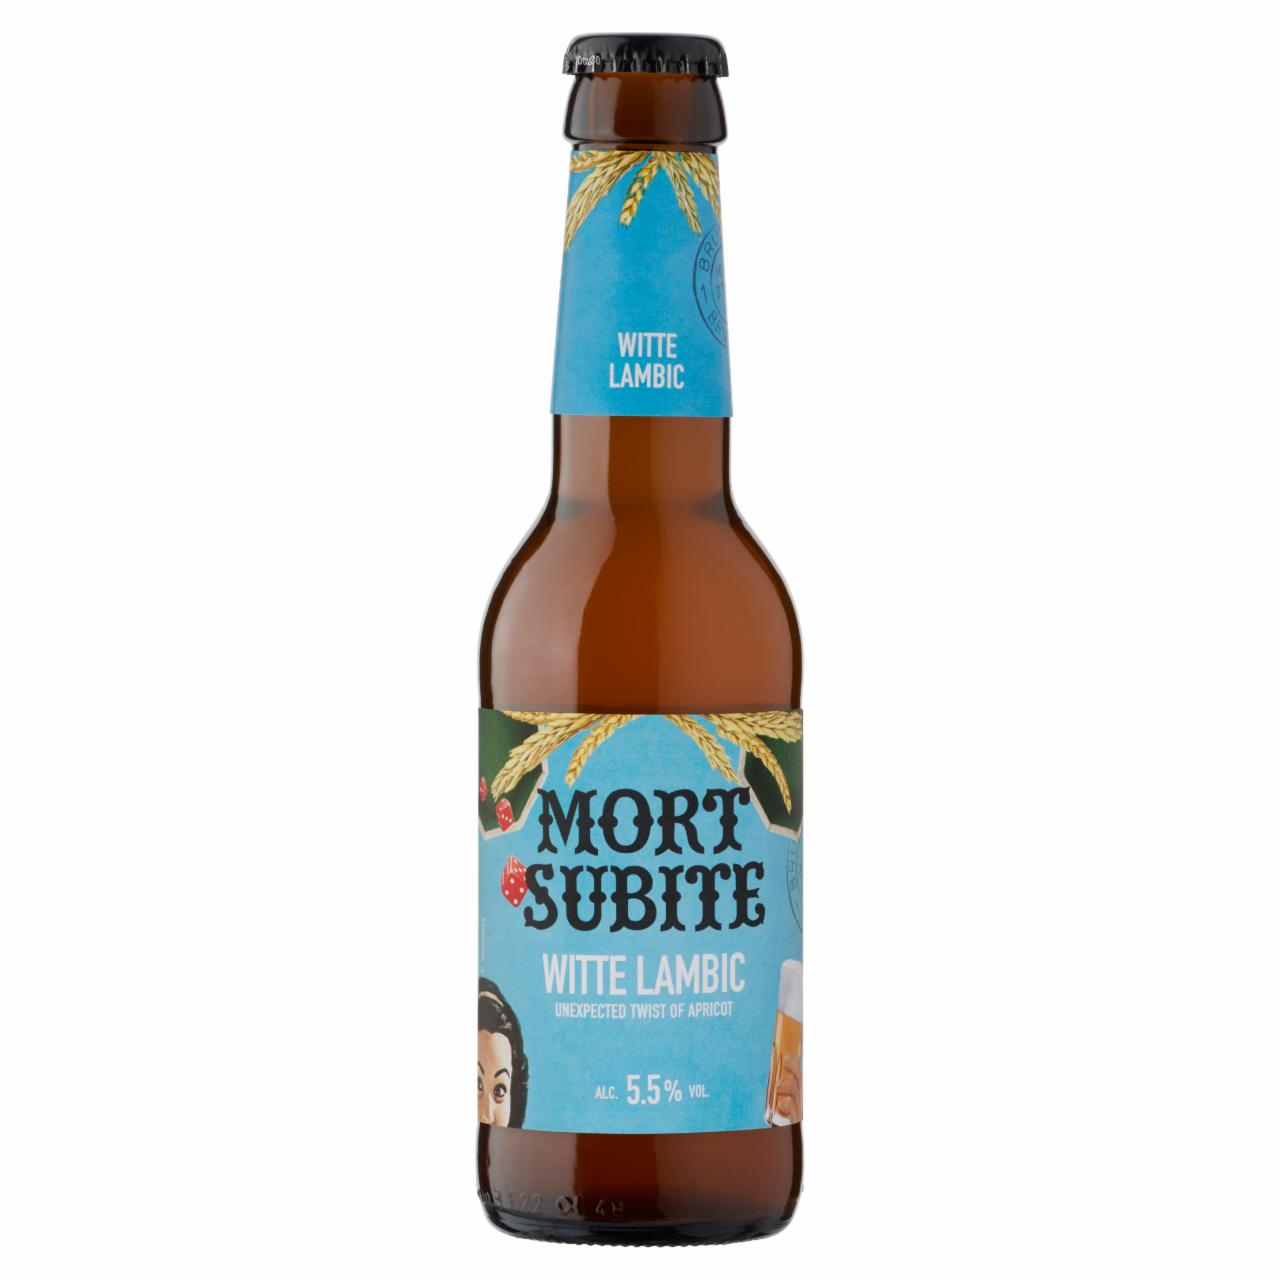 Képek - Mort Subite Witte belga lambic típusú, spontán erjedésű búzás sörkülönlegesség 5,5% 0,25 l üveg